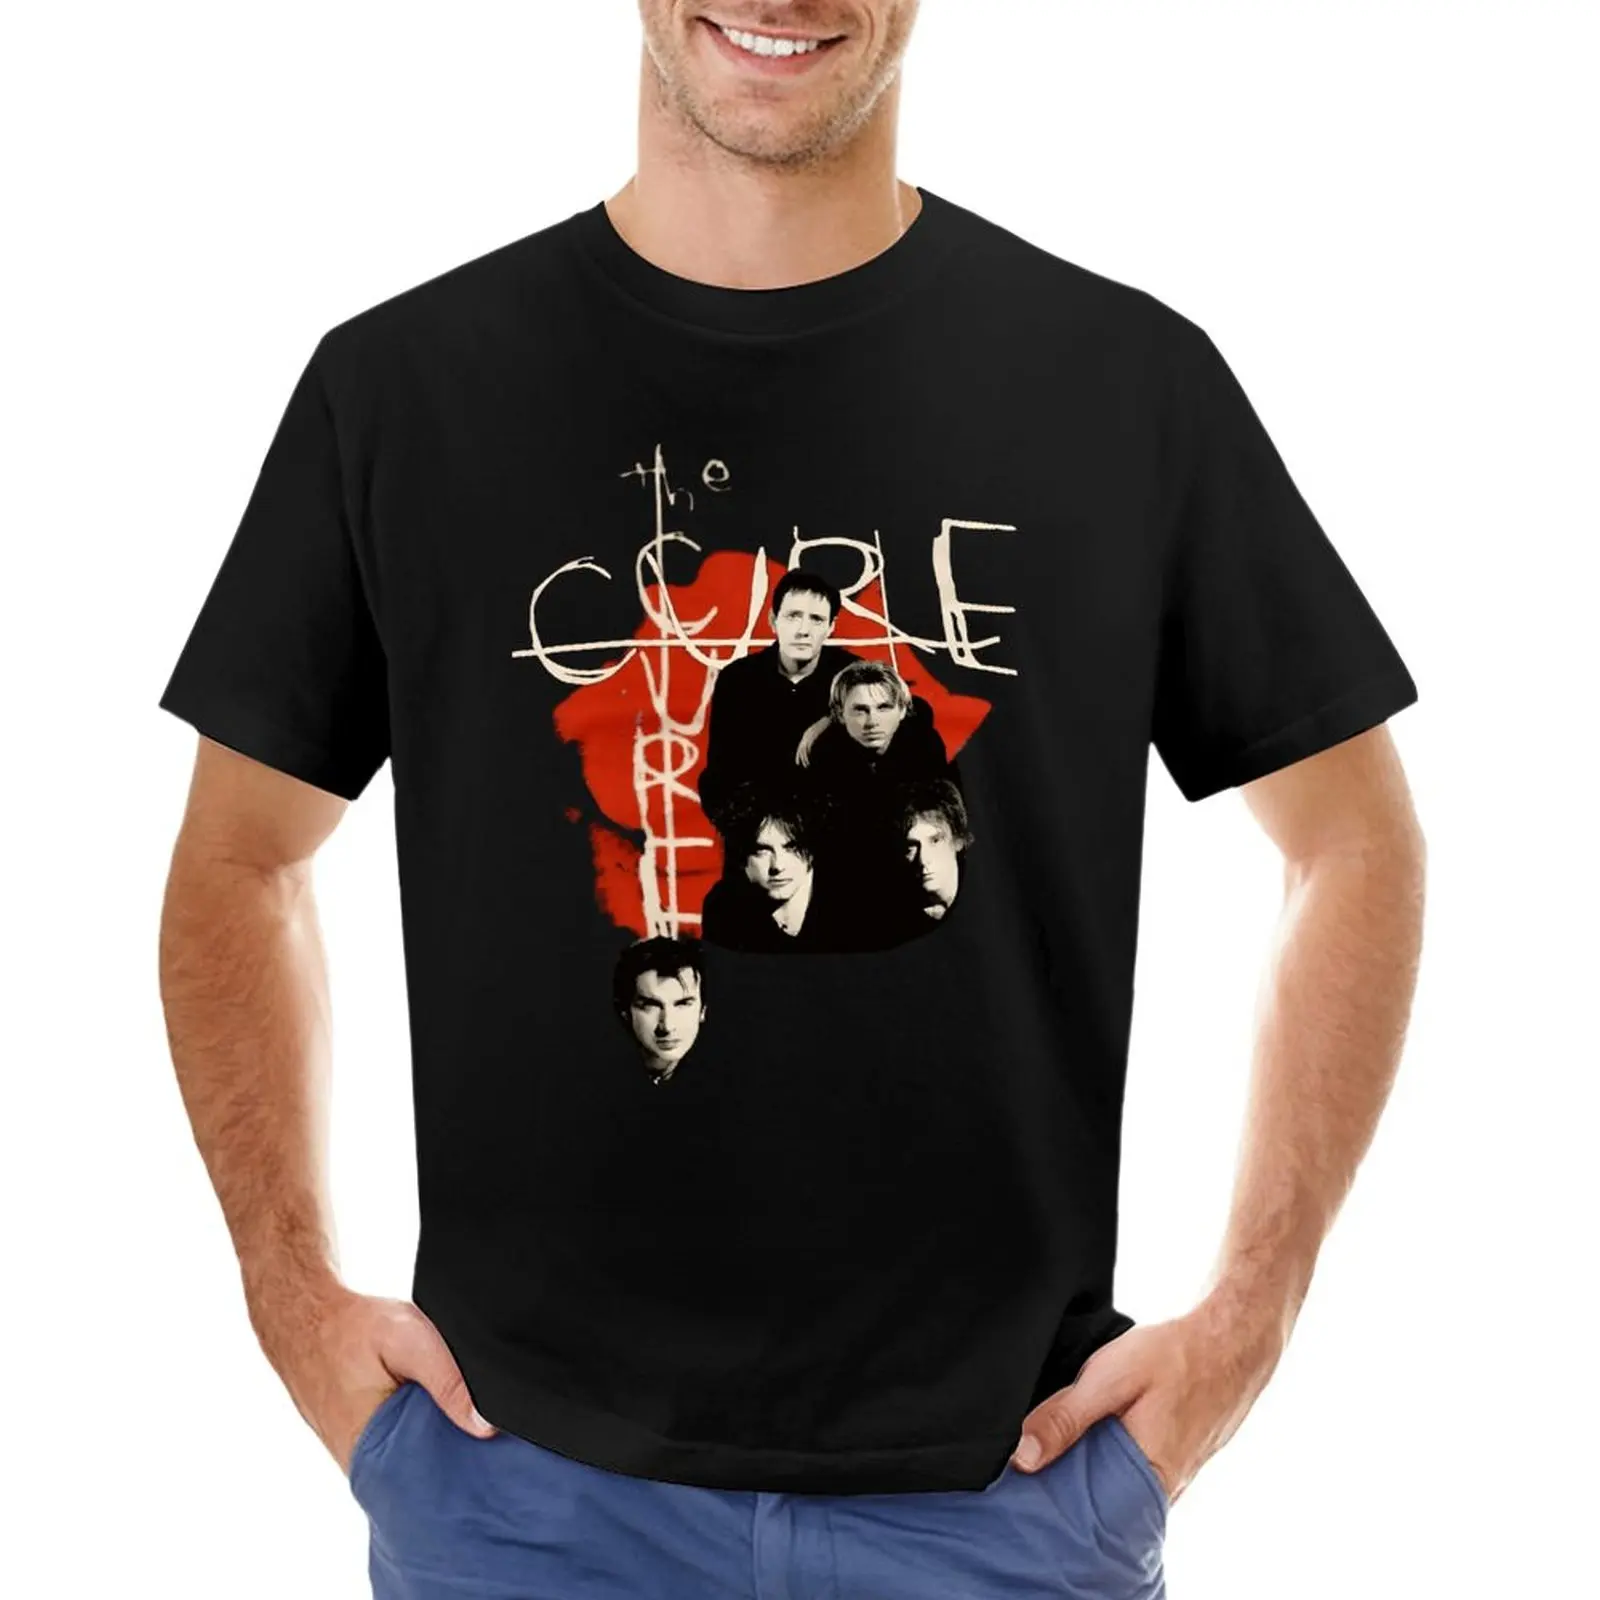 Классическая футболка The Cure, короткие мужские футболки с графическим рисунком